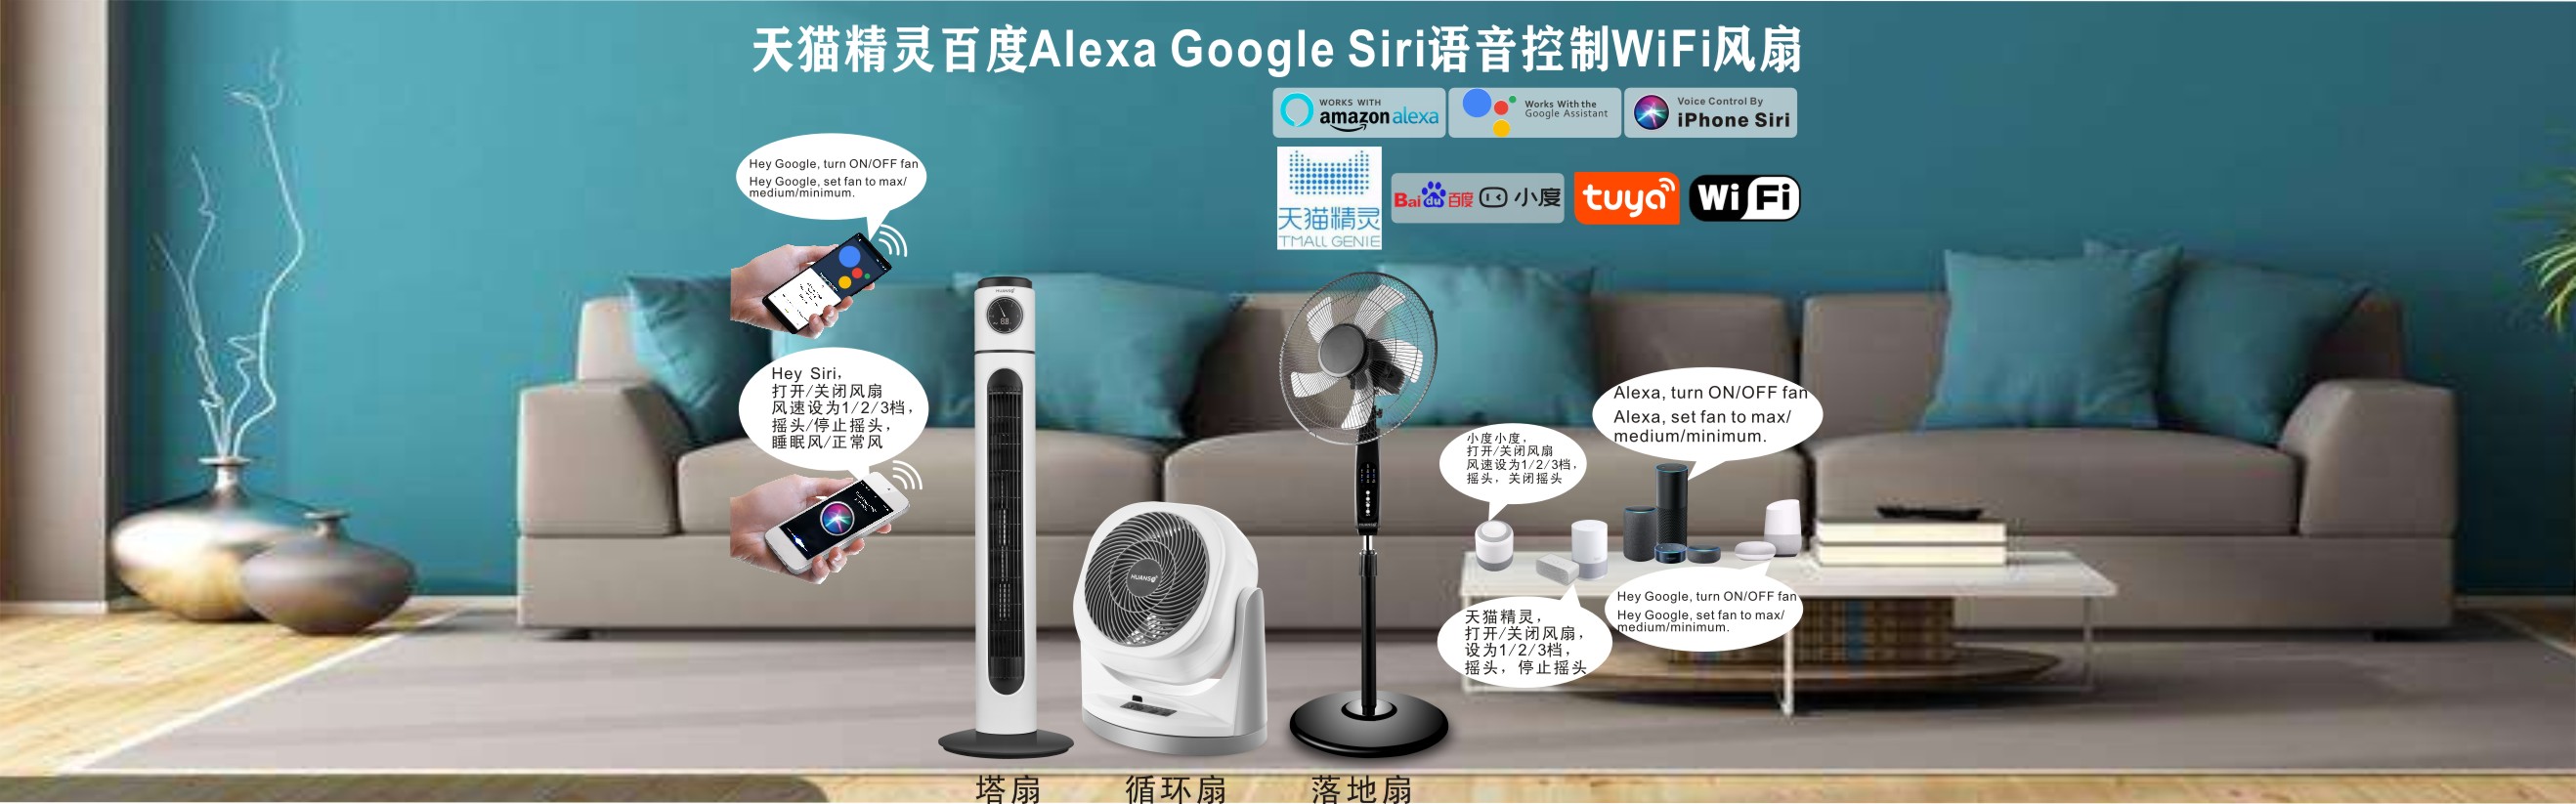 天猫百度Alexa Google语音控